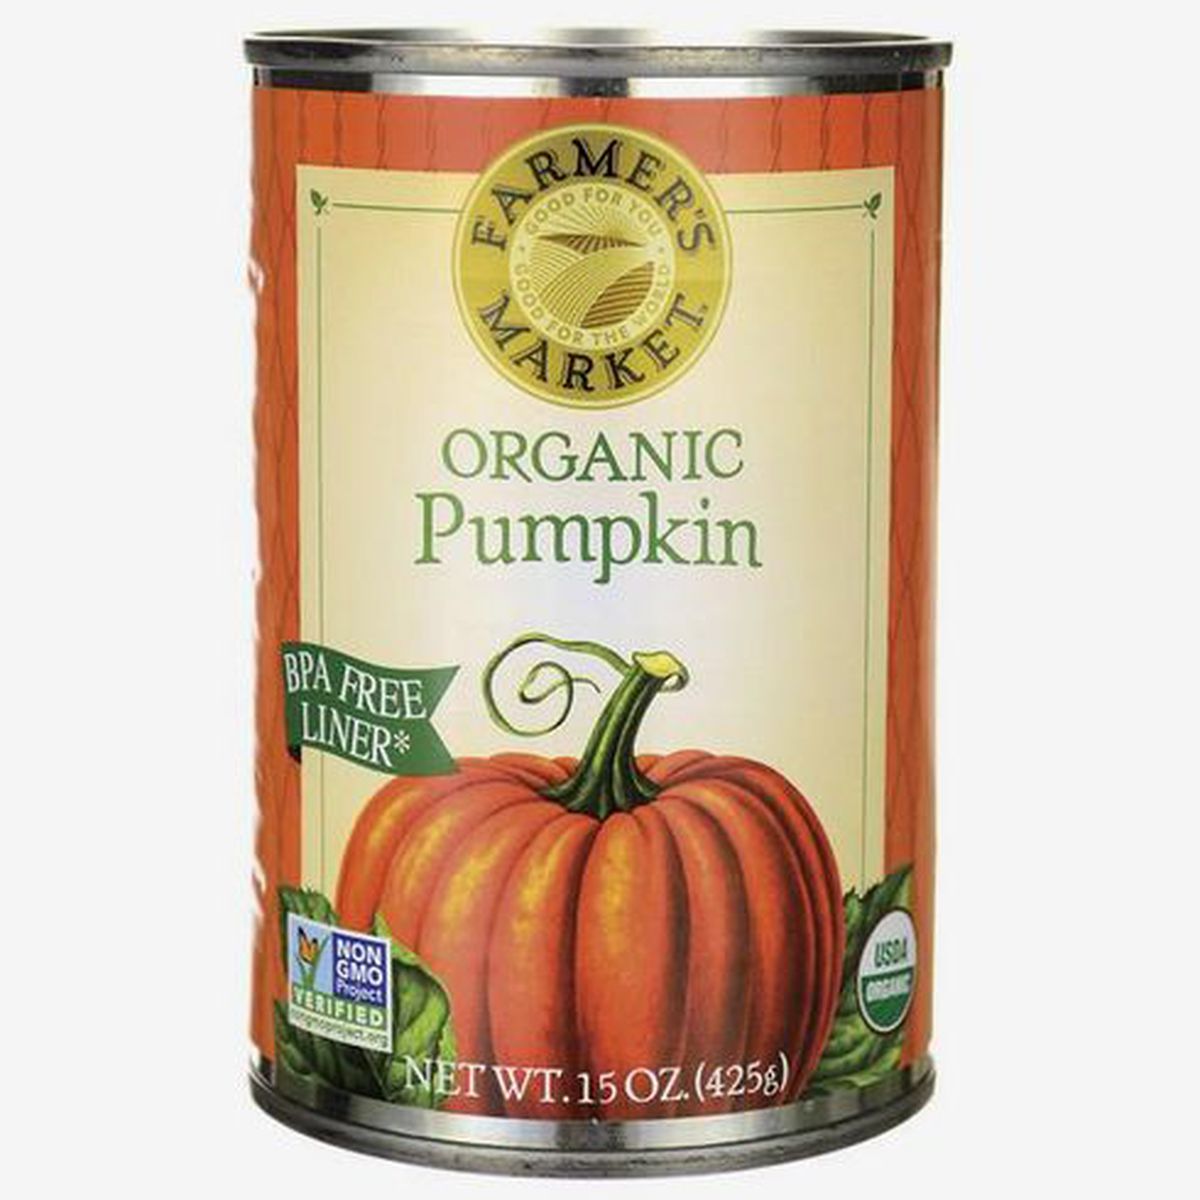 A can of organic pumpkin